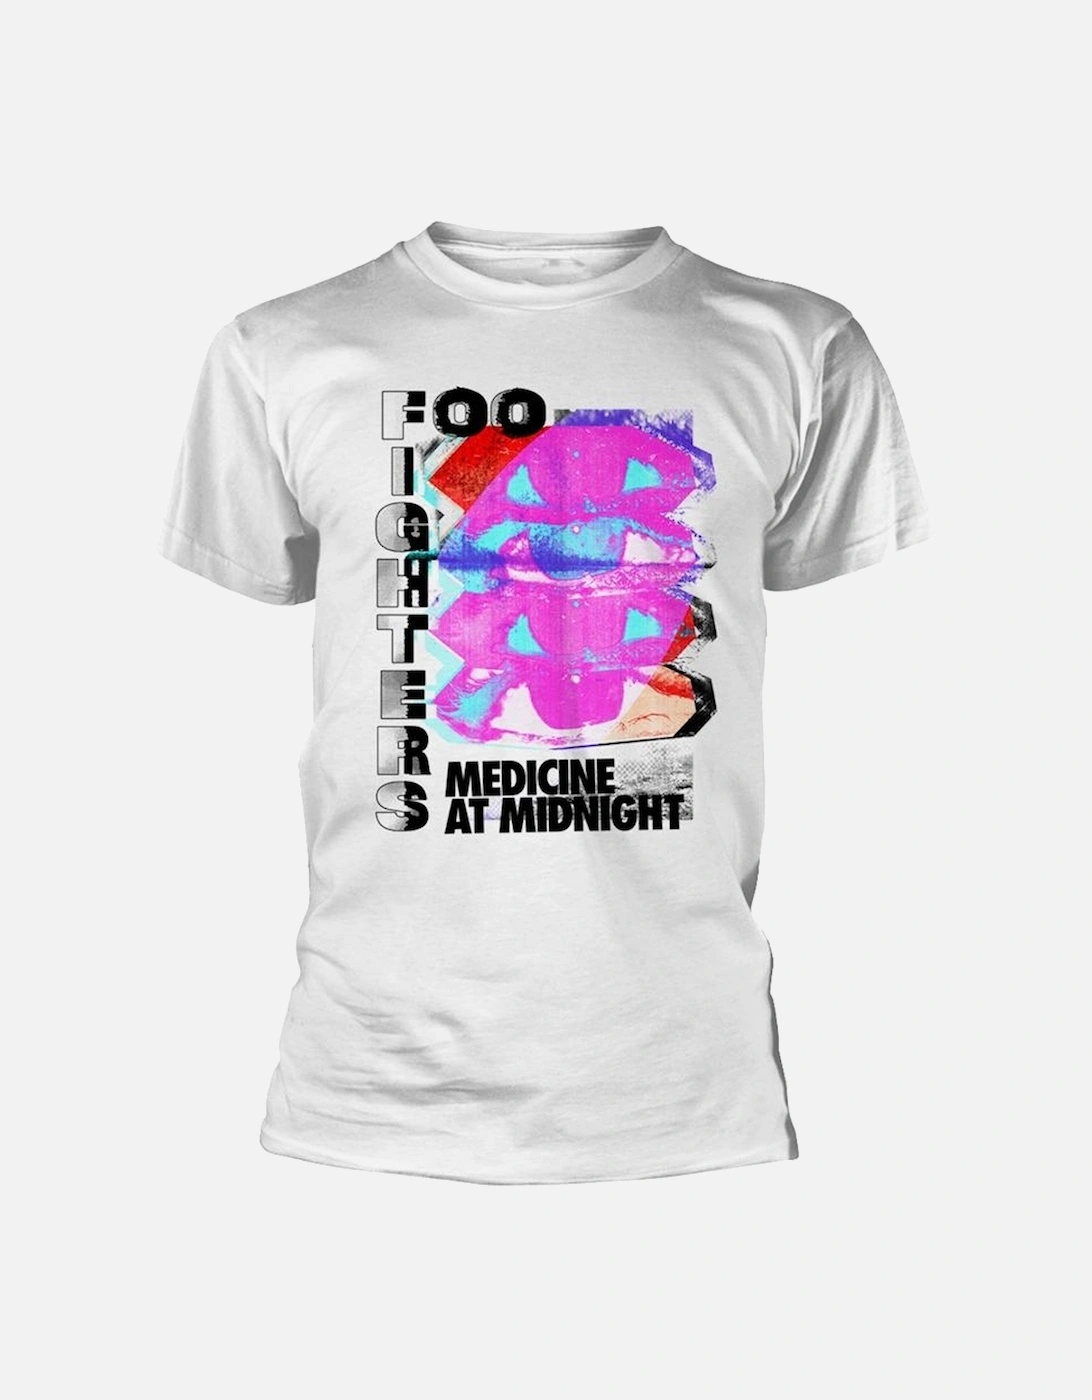 Unisex Adult Medicine At Midnight Tilt T-Shirt, 2 of 1